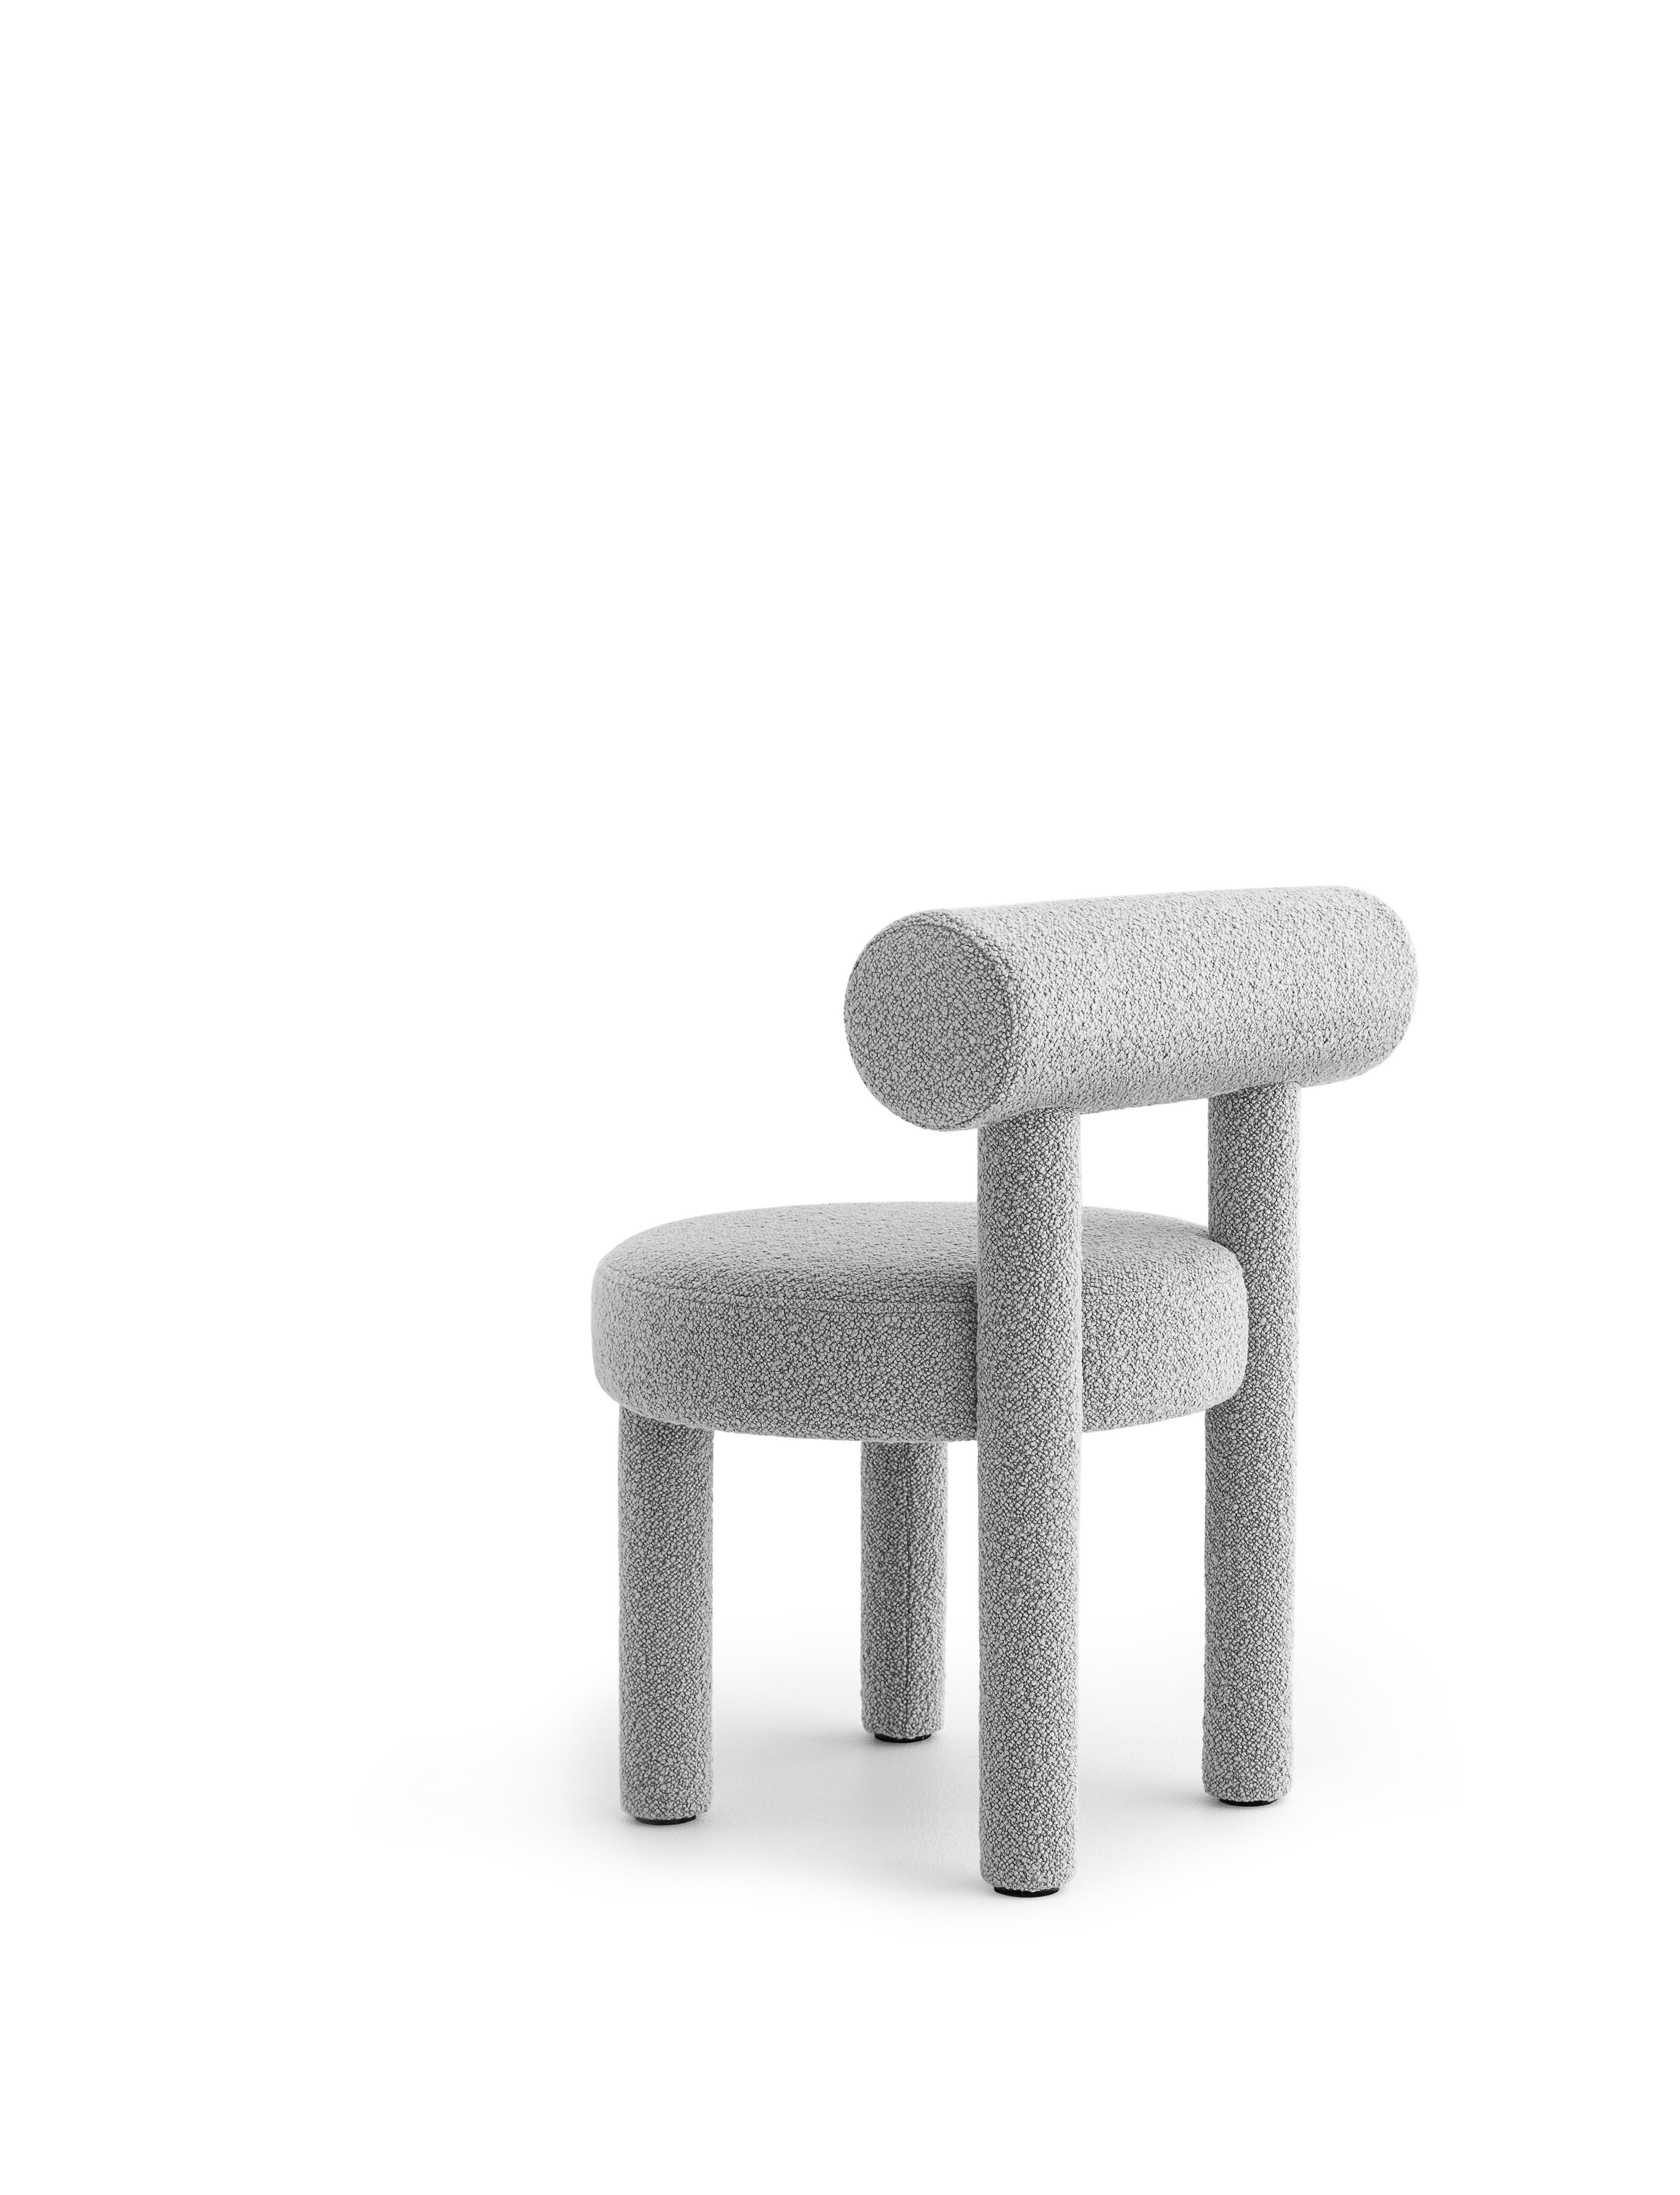 Wool Contemporary Chair 'Gropius CS1' by Noom, Dedar, Karakorum 004 For Sale